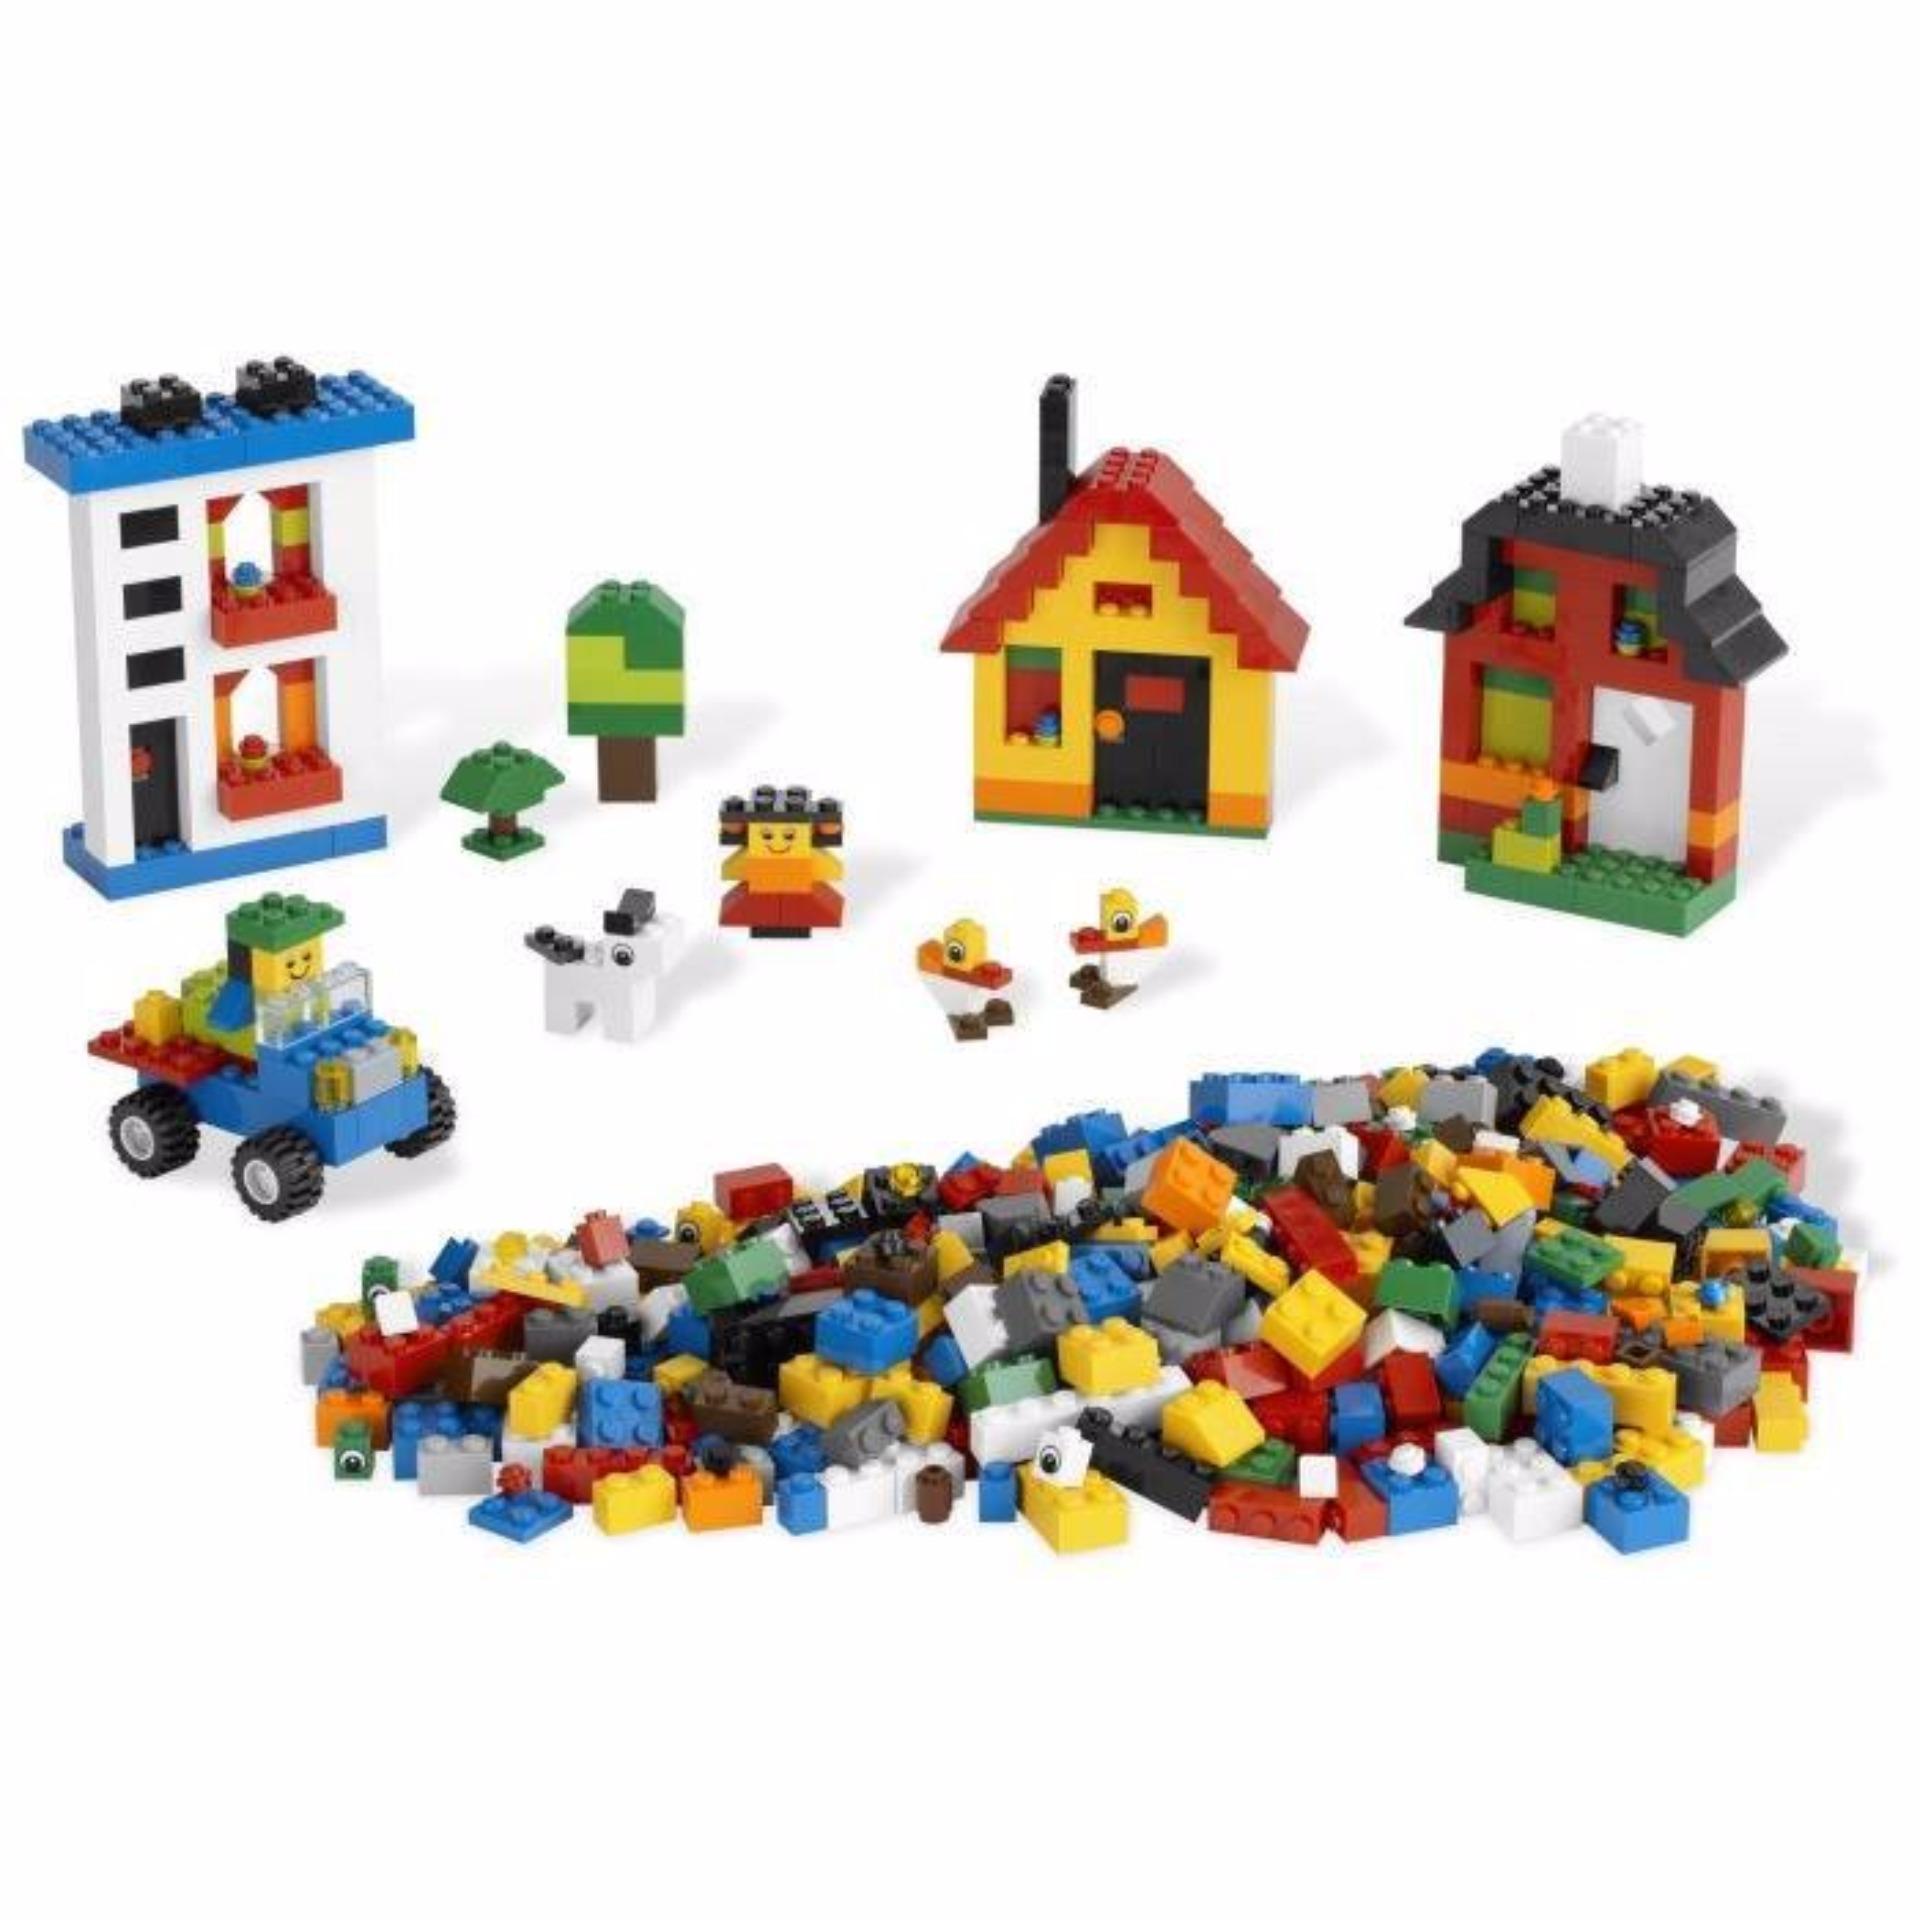 BỘ XẾP HÌNH LEGO 1000 CHI TIẾT